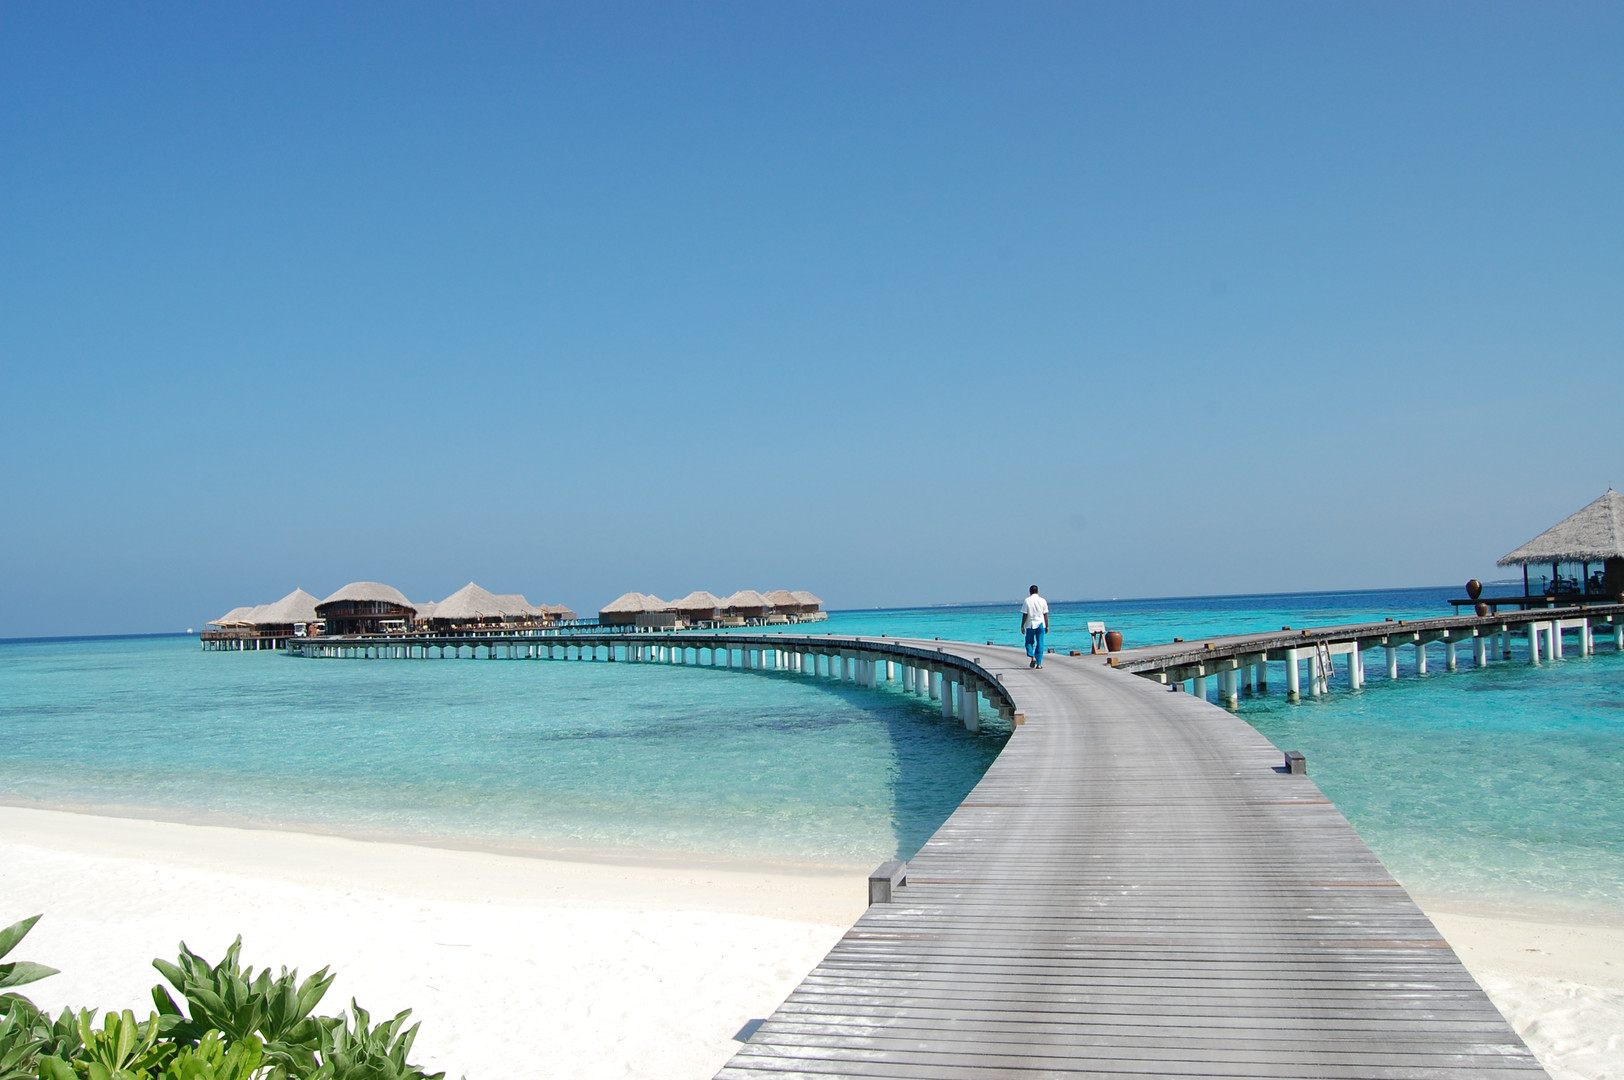 马尔代夫七日游及马尔代夫旅游景点推荐-Club Med地中海俱乐部官网